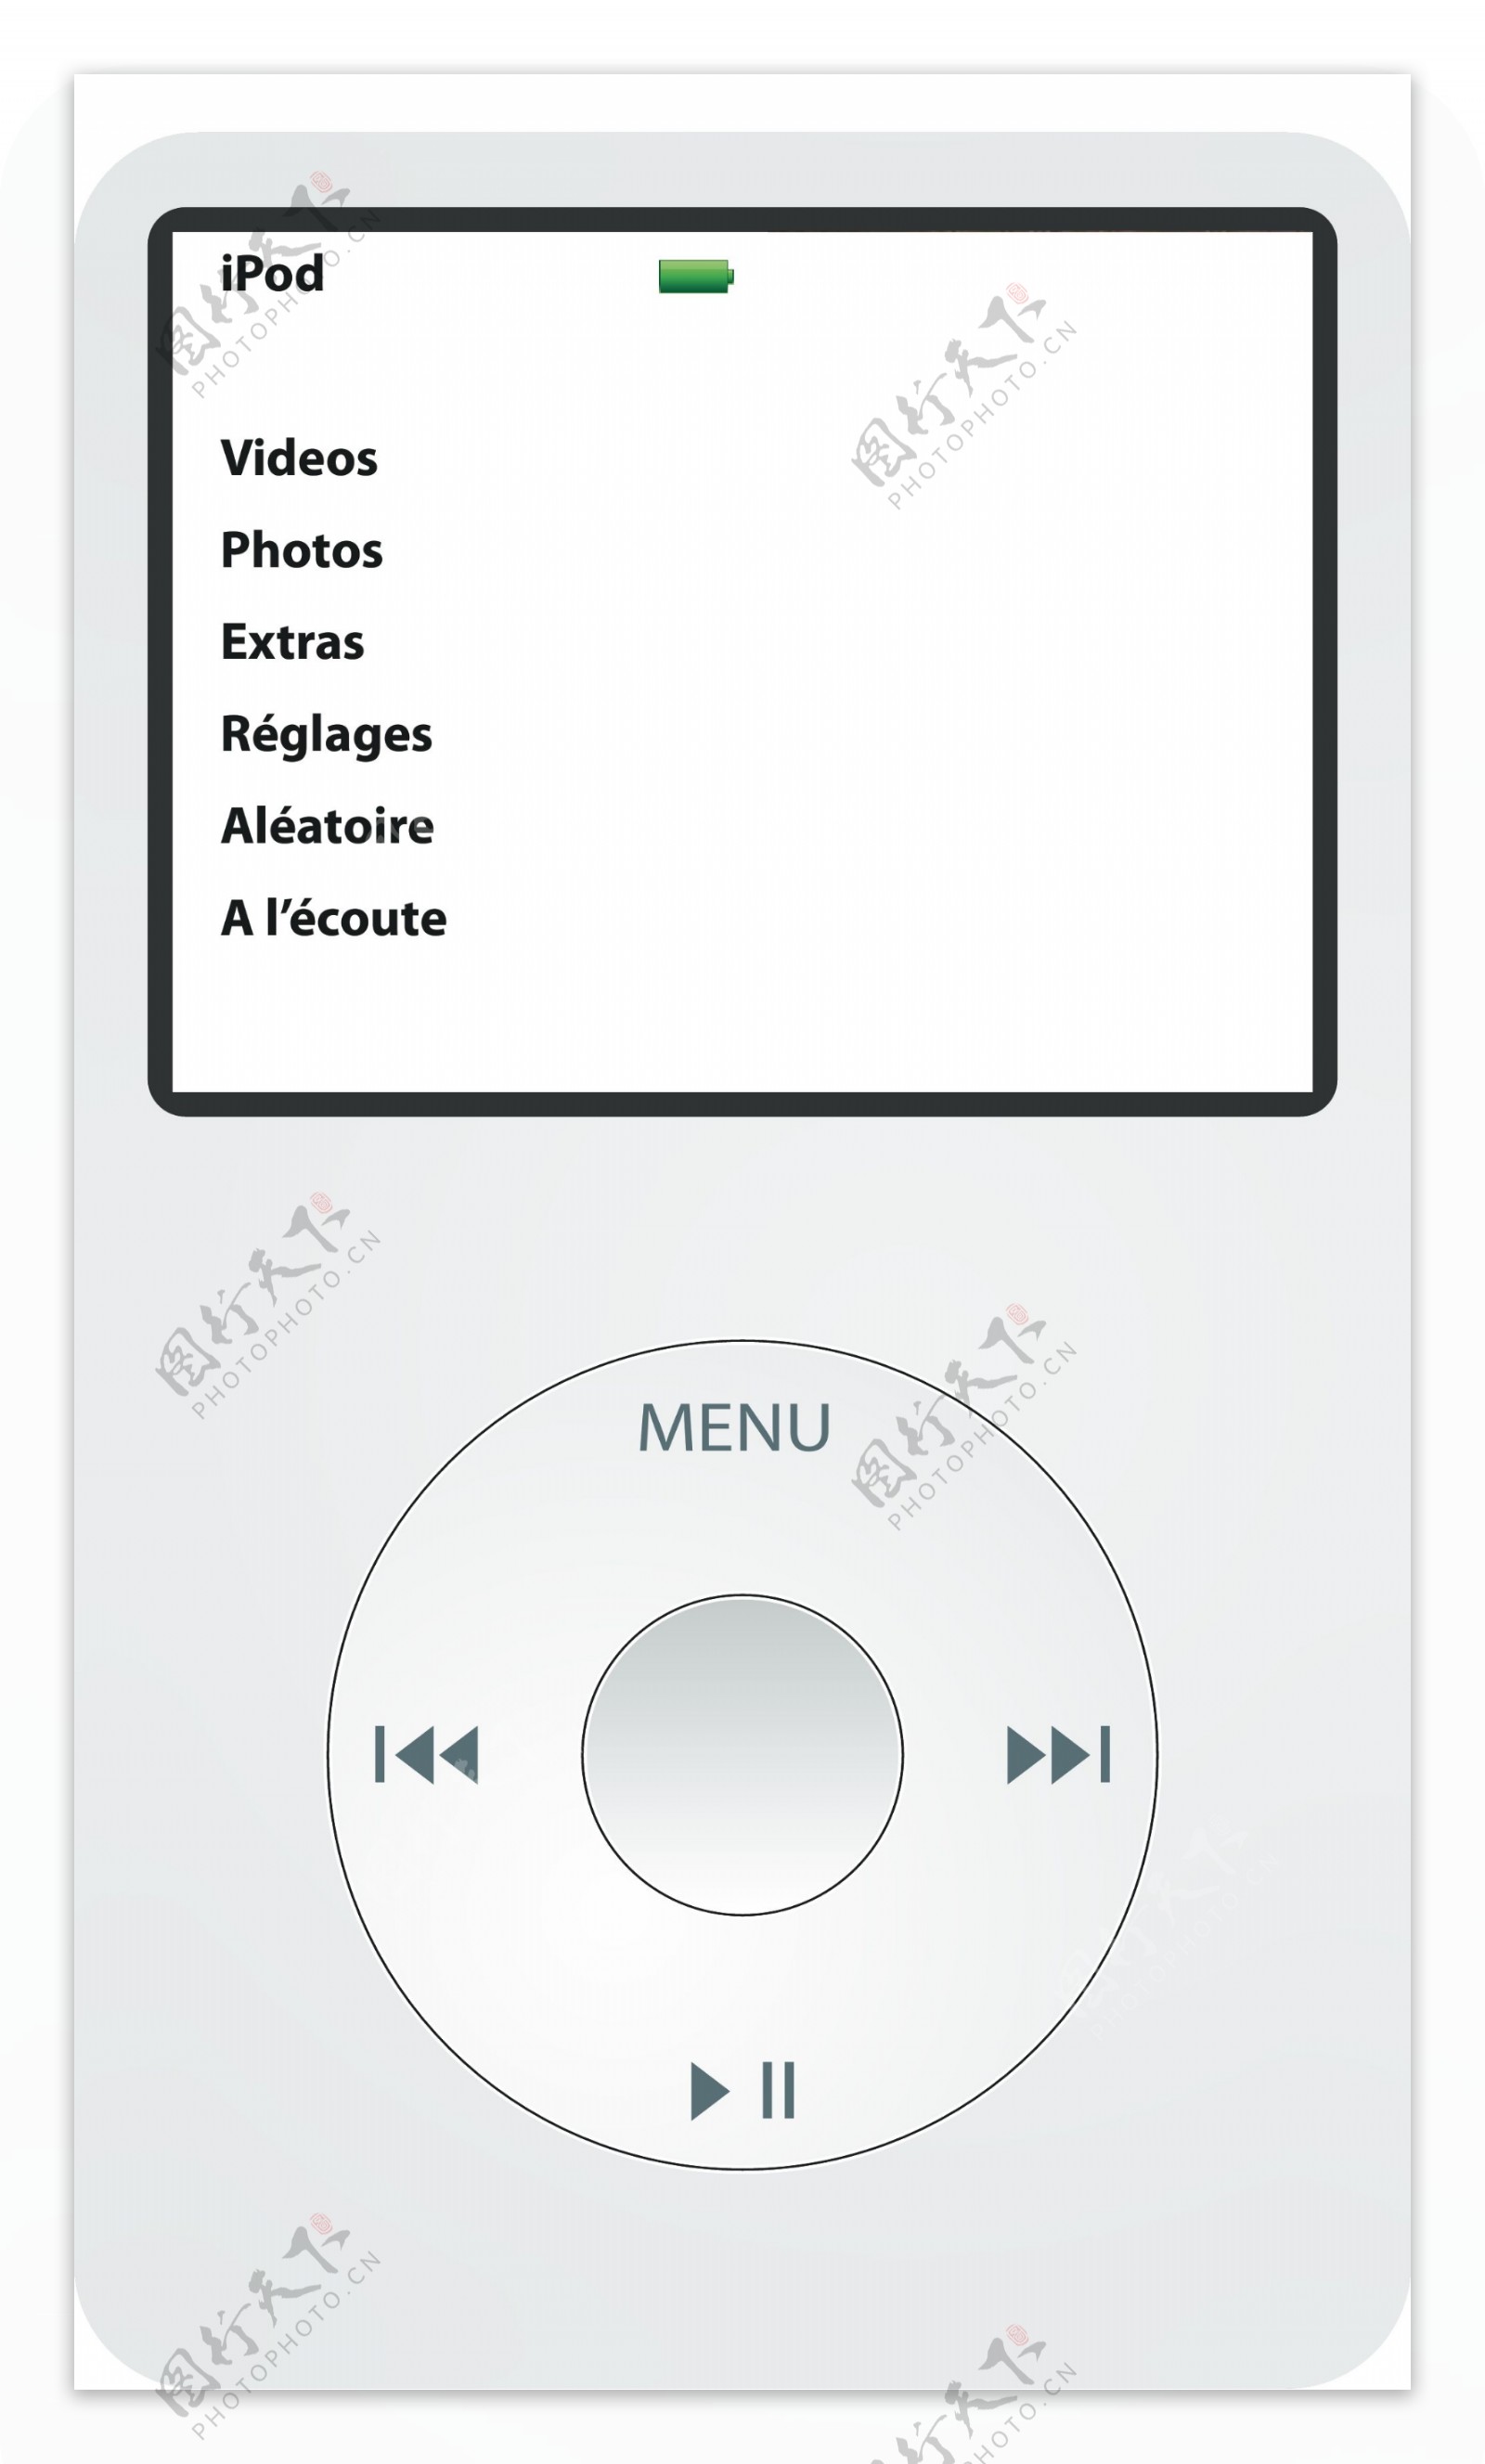 iPod的经典